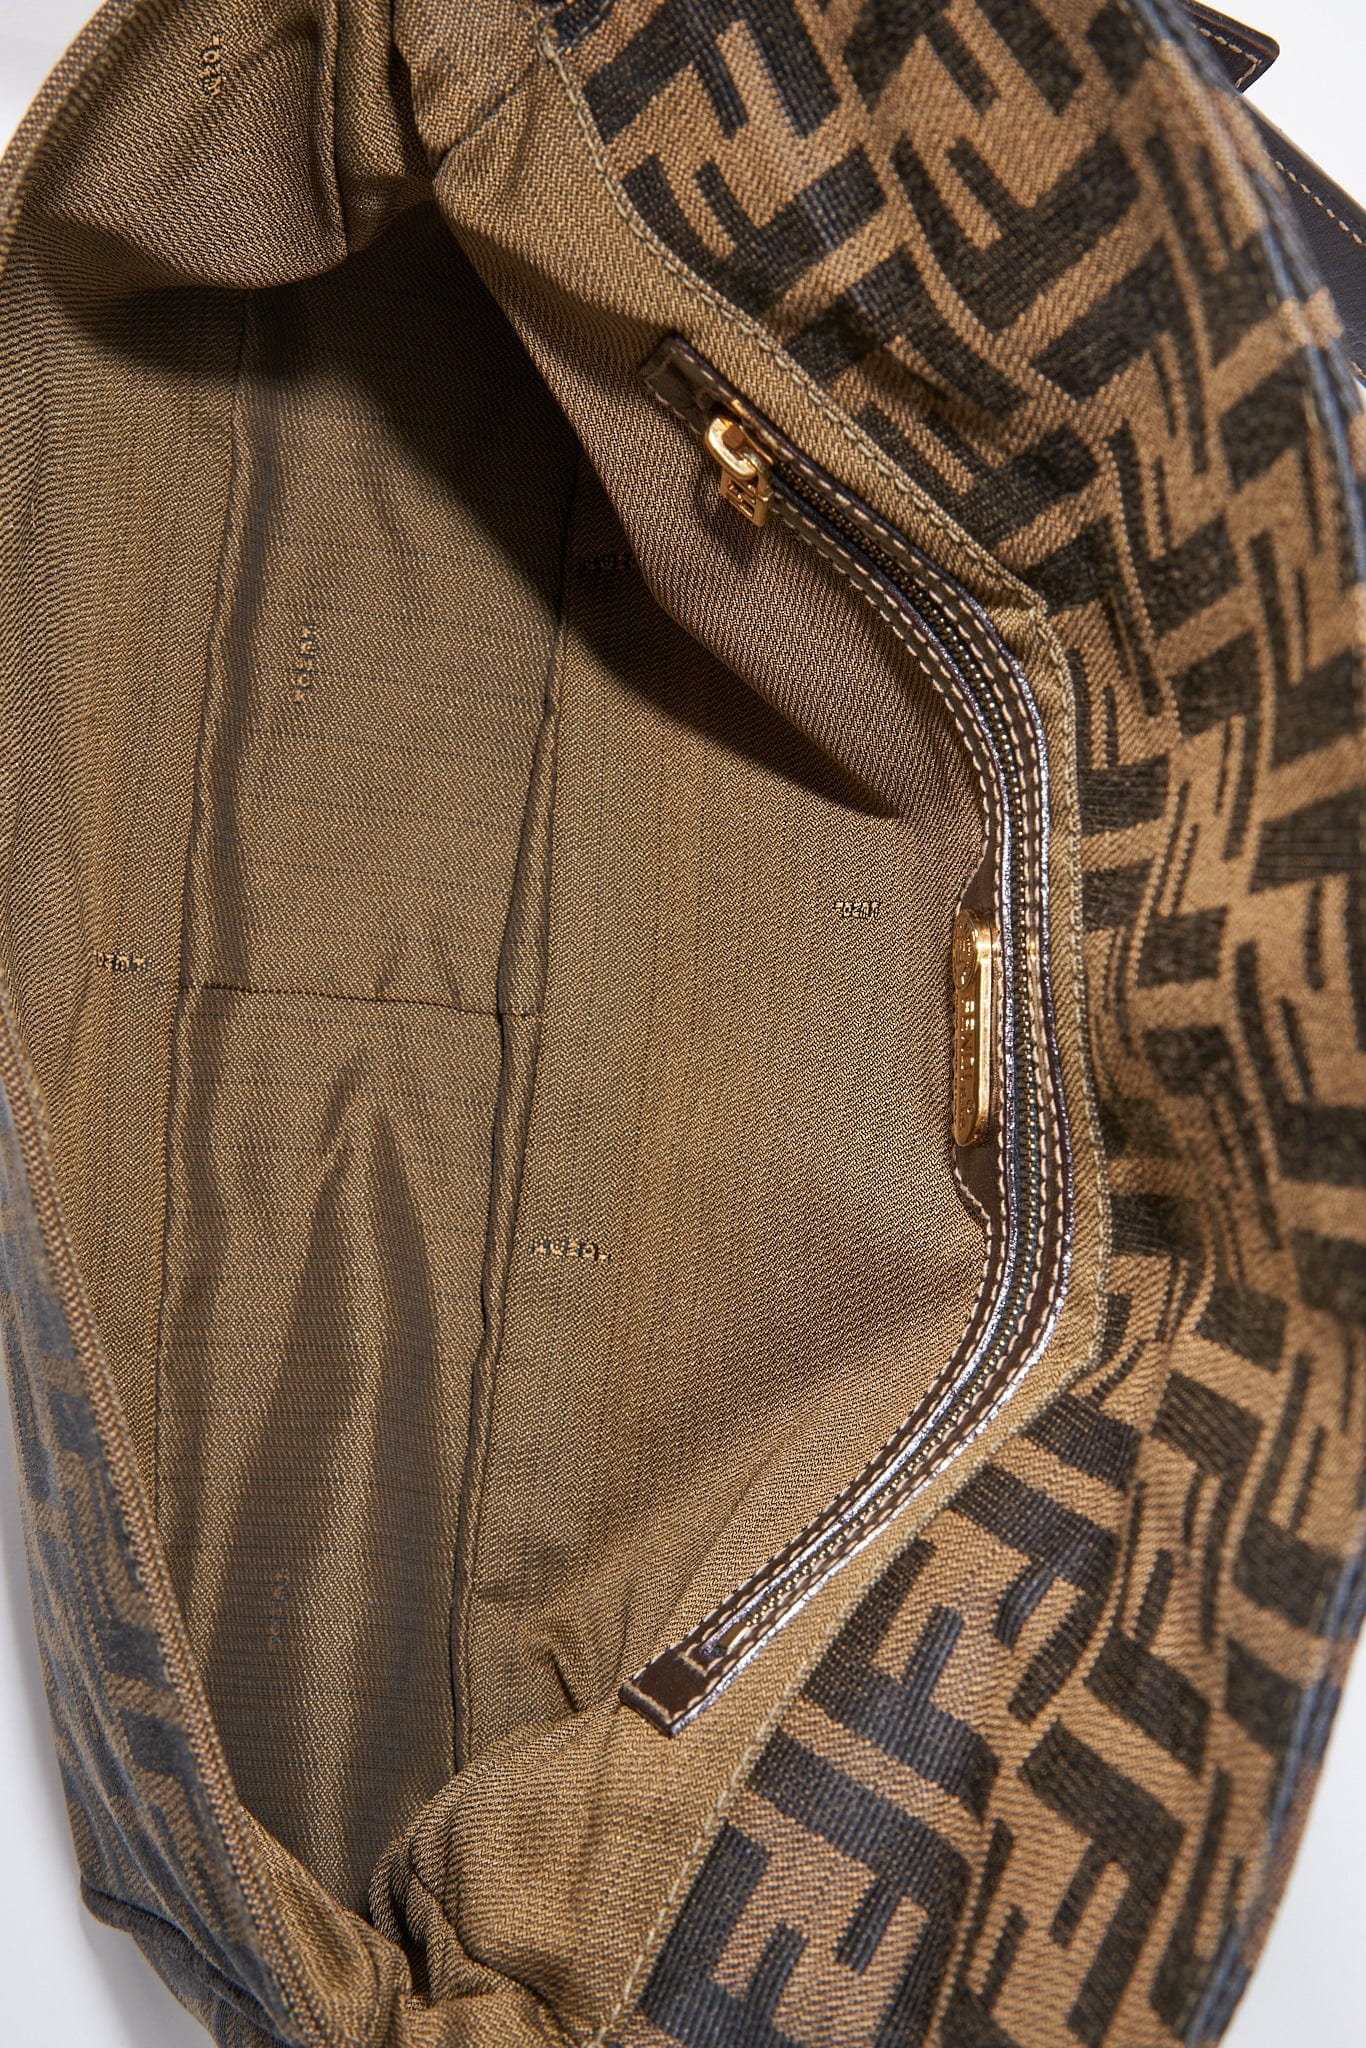 Vintage Fendi Shoulder Bag in Brown Zucca Canvas – The Hosta